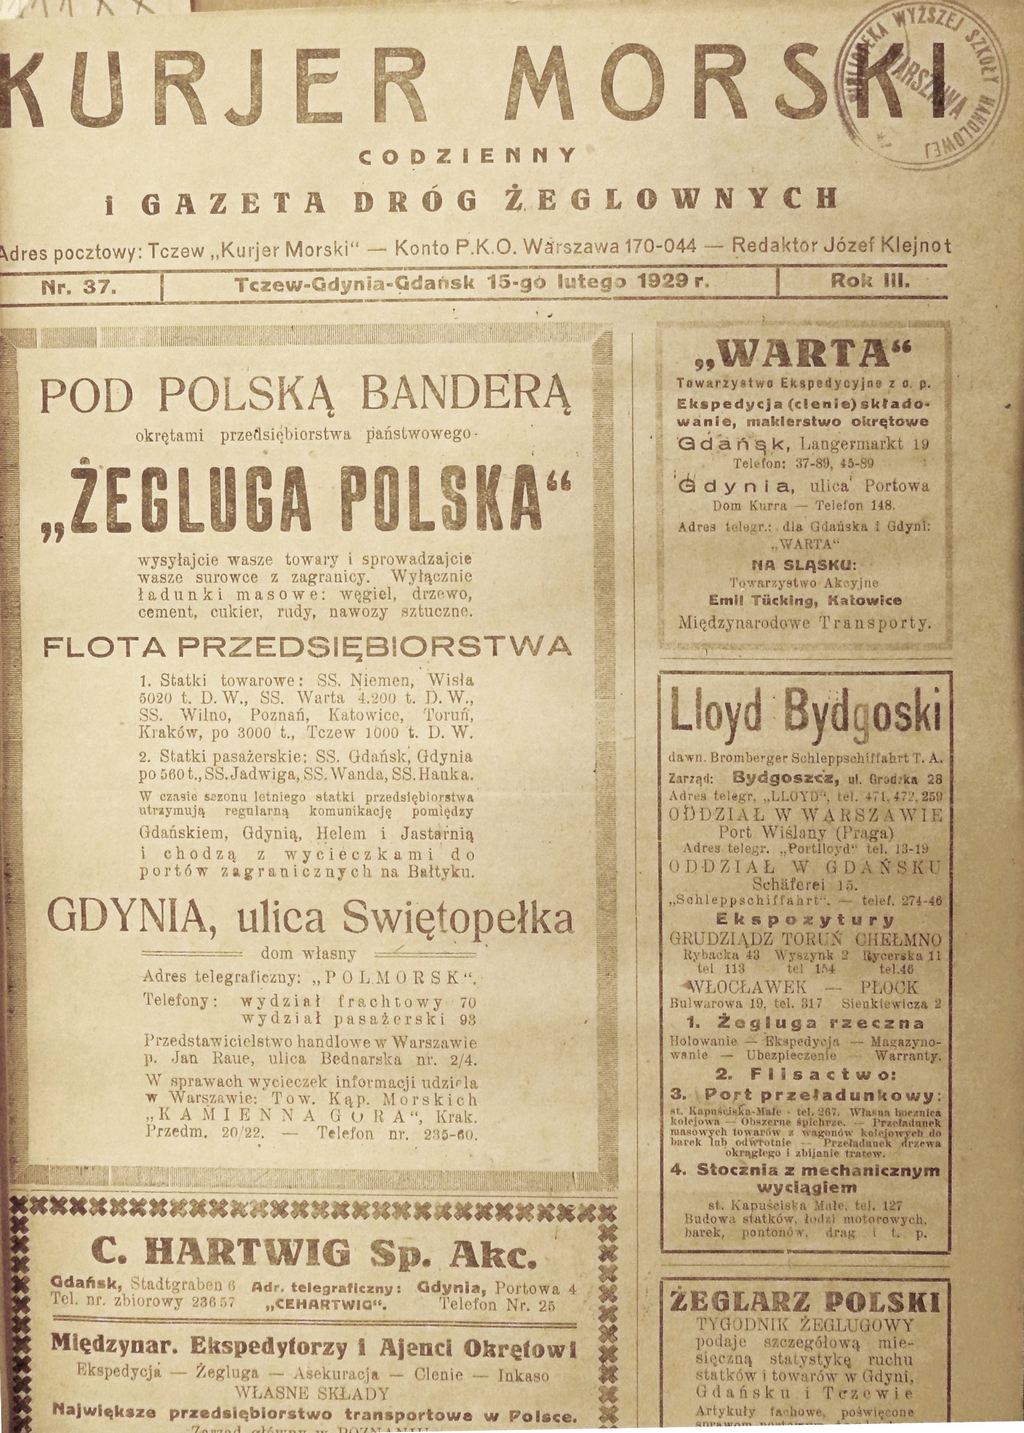 1 wydanie Kurjera Morskiego z 15 lutego 1929r.